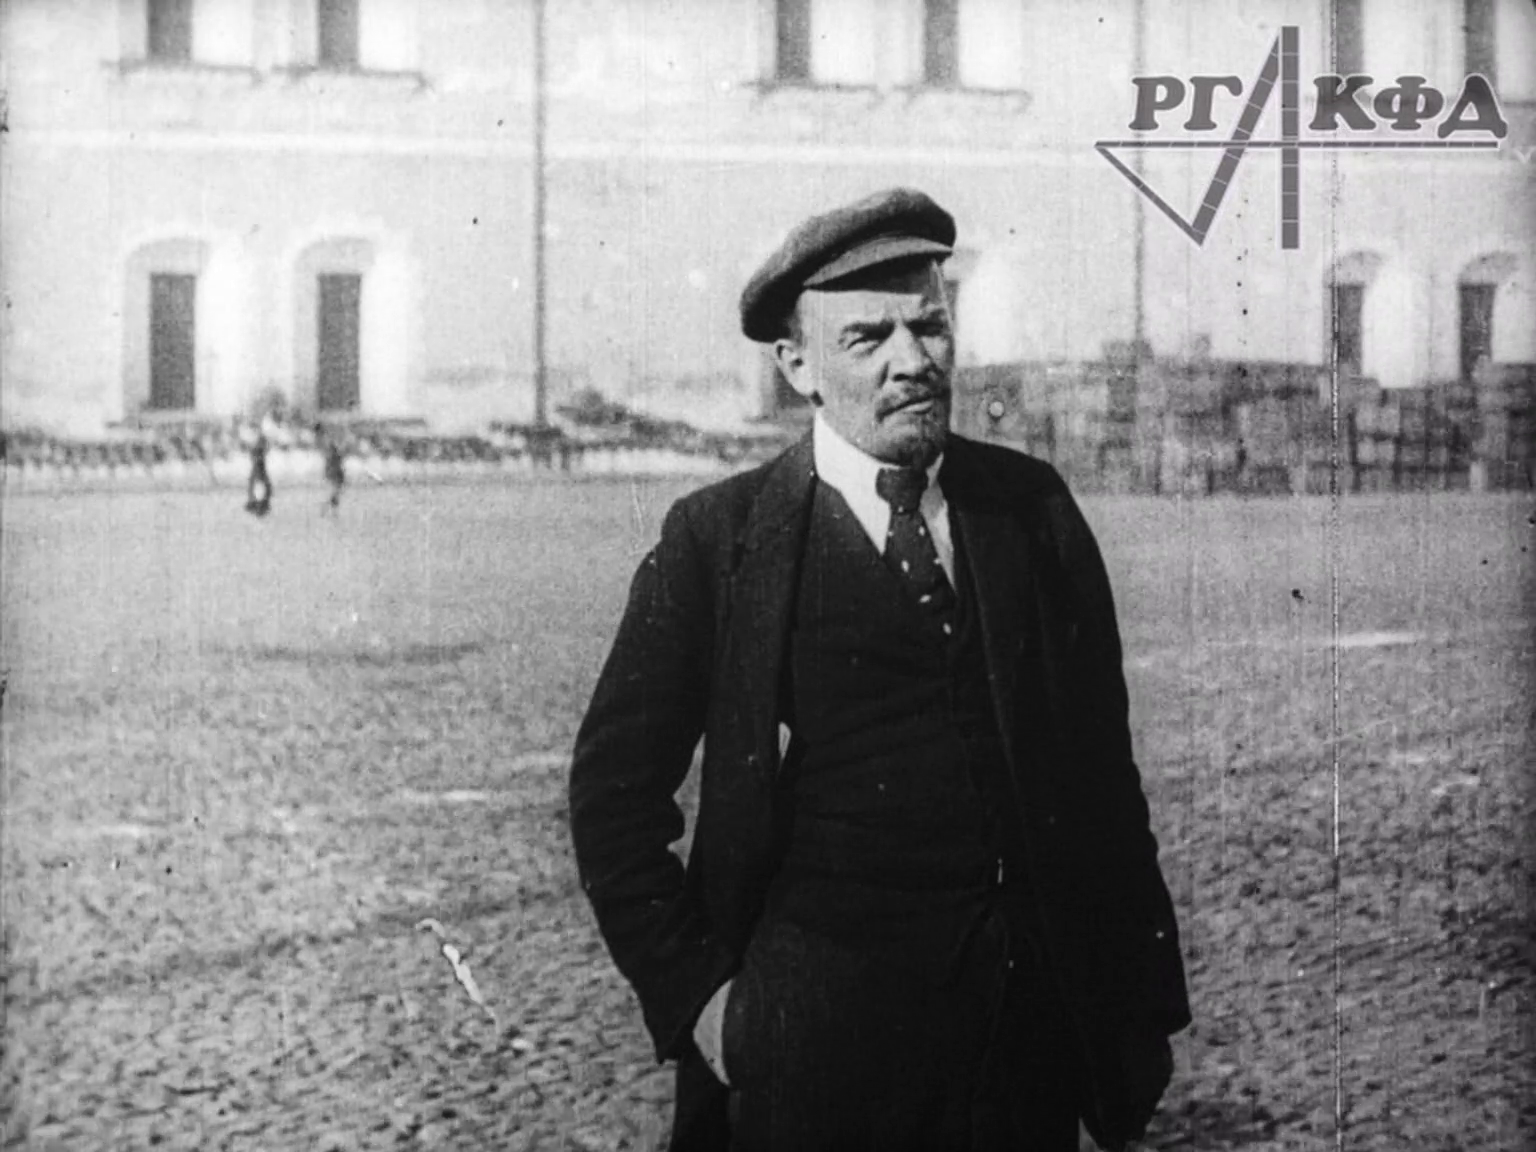 В.И. Ленин гуляет по территории Кремля, беседует с В.Д. Бонч-Бруевичем (немая кинохроника, 1918 г.)